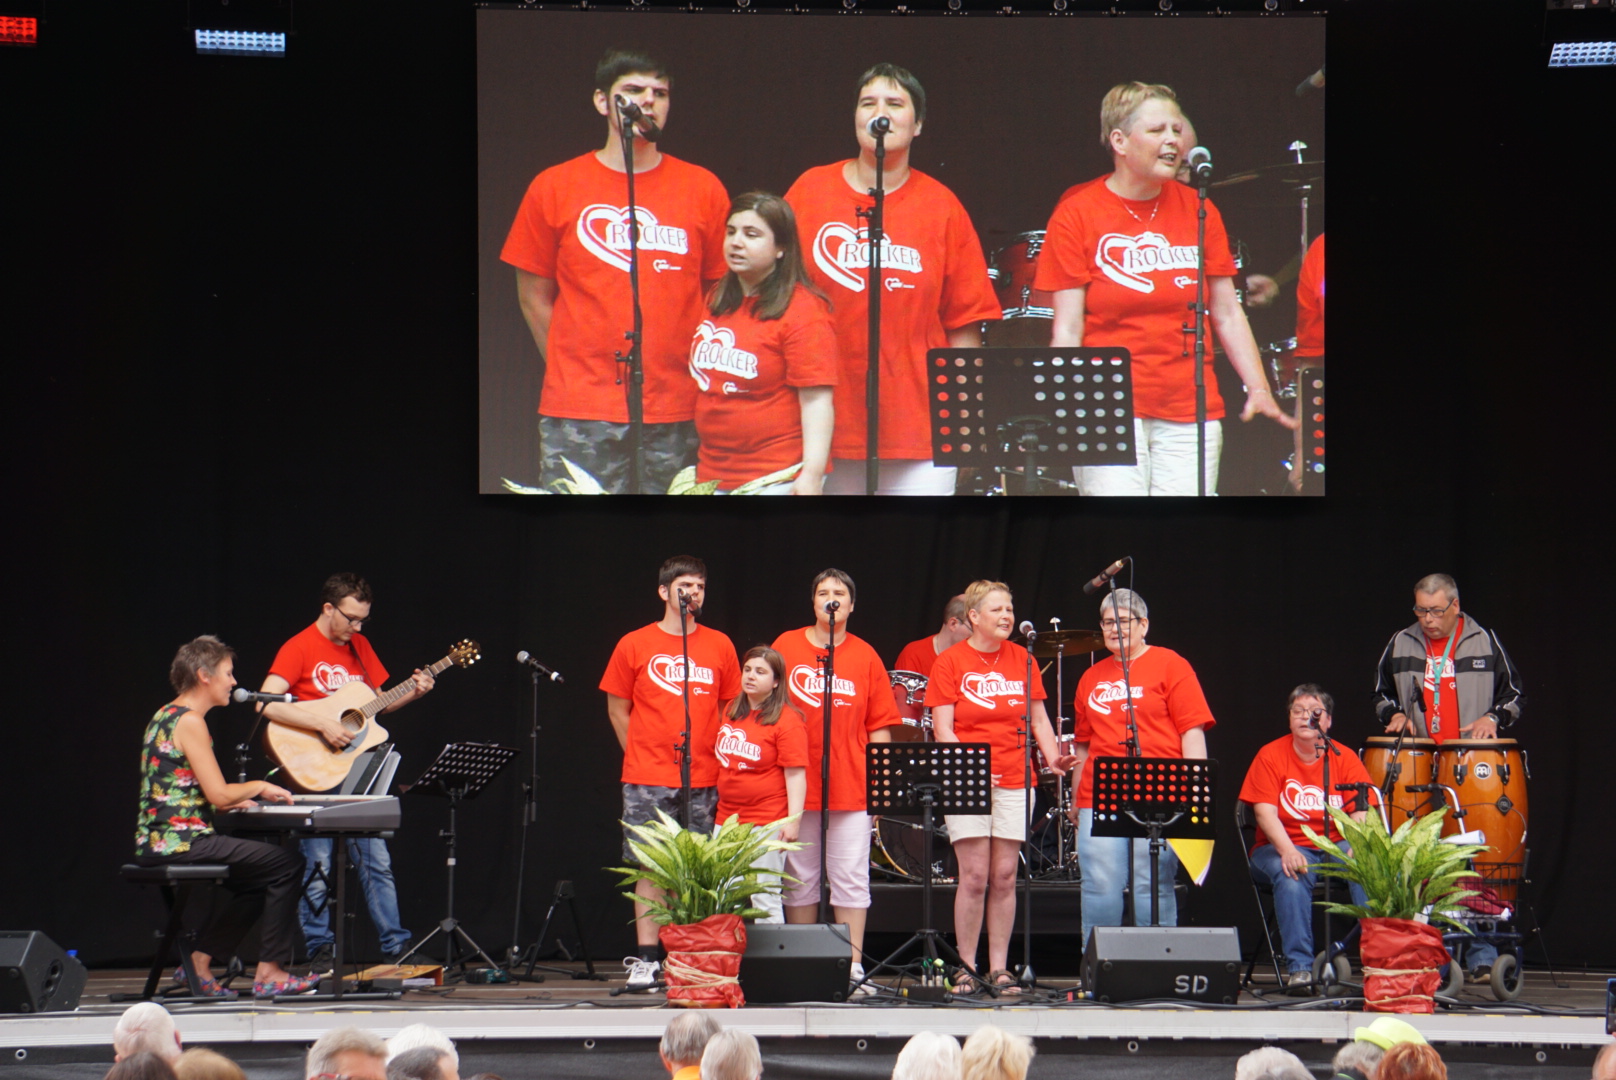 10 Mitglieder, bis auf eine am Keyboard alle in roten T-Shirts auf einer Außenbühne beim Auftritt.